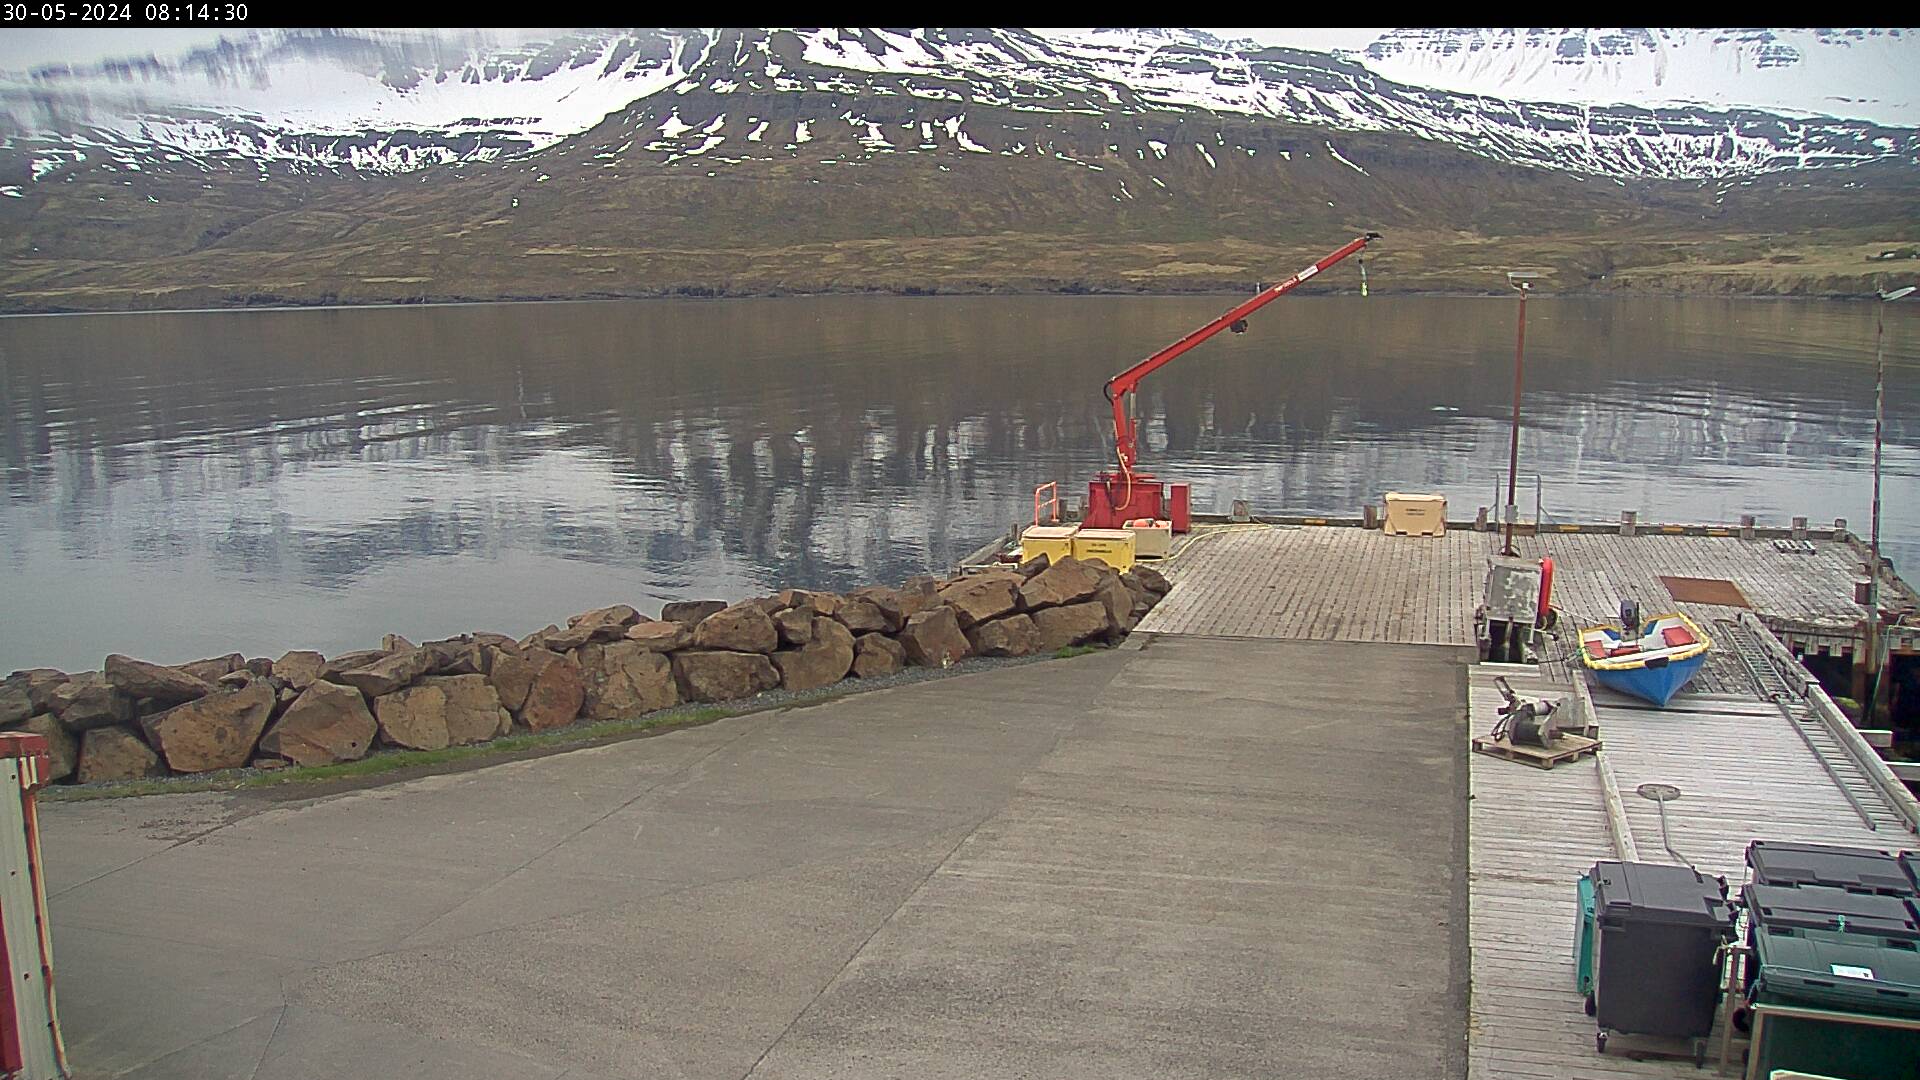 Mjóifjörður Thu. 08:14